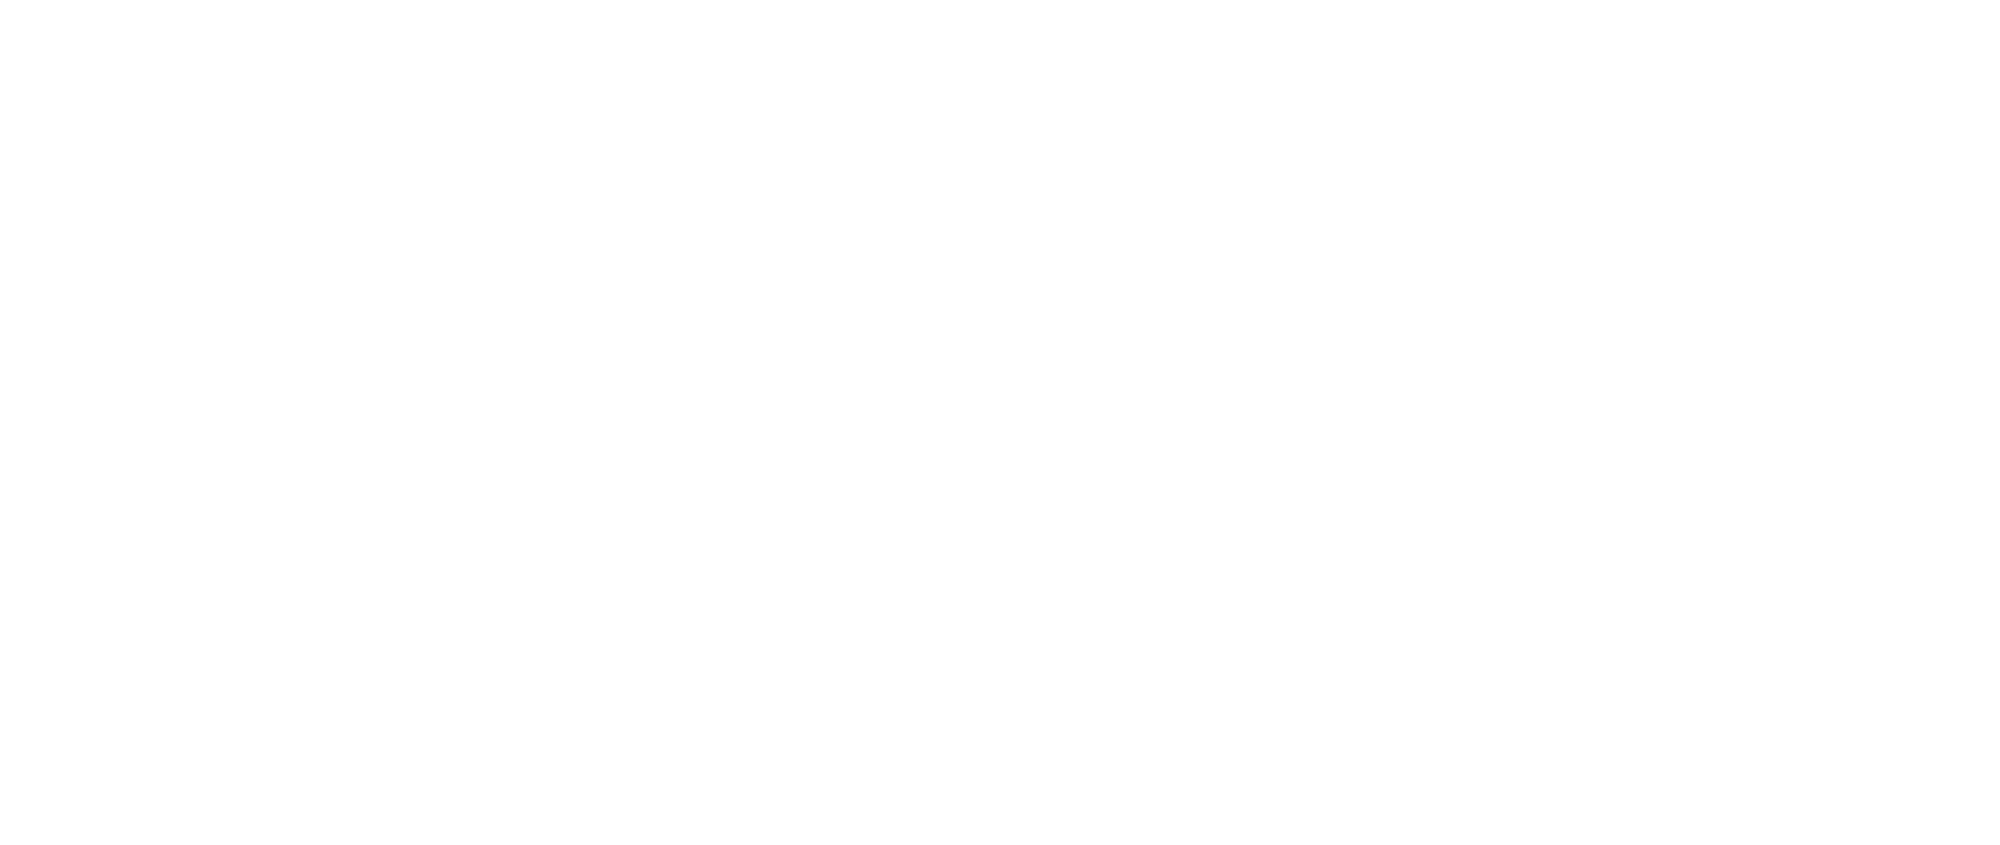 Mission — Firebrands Global